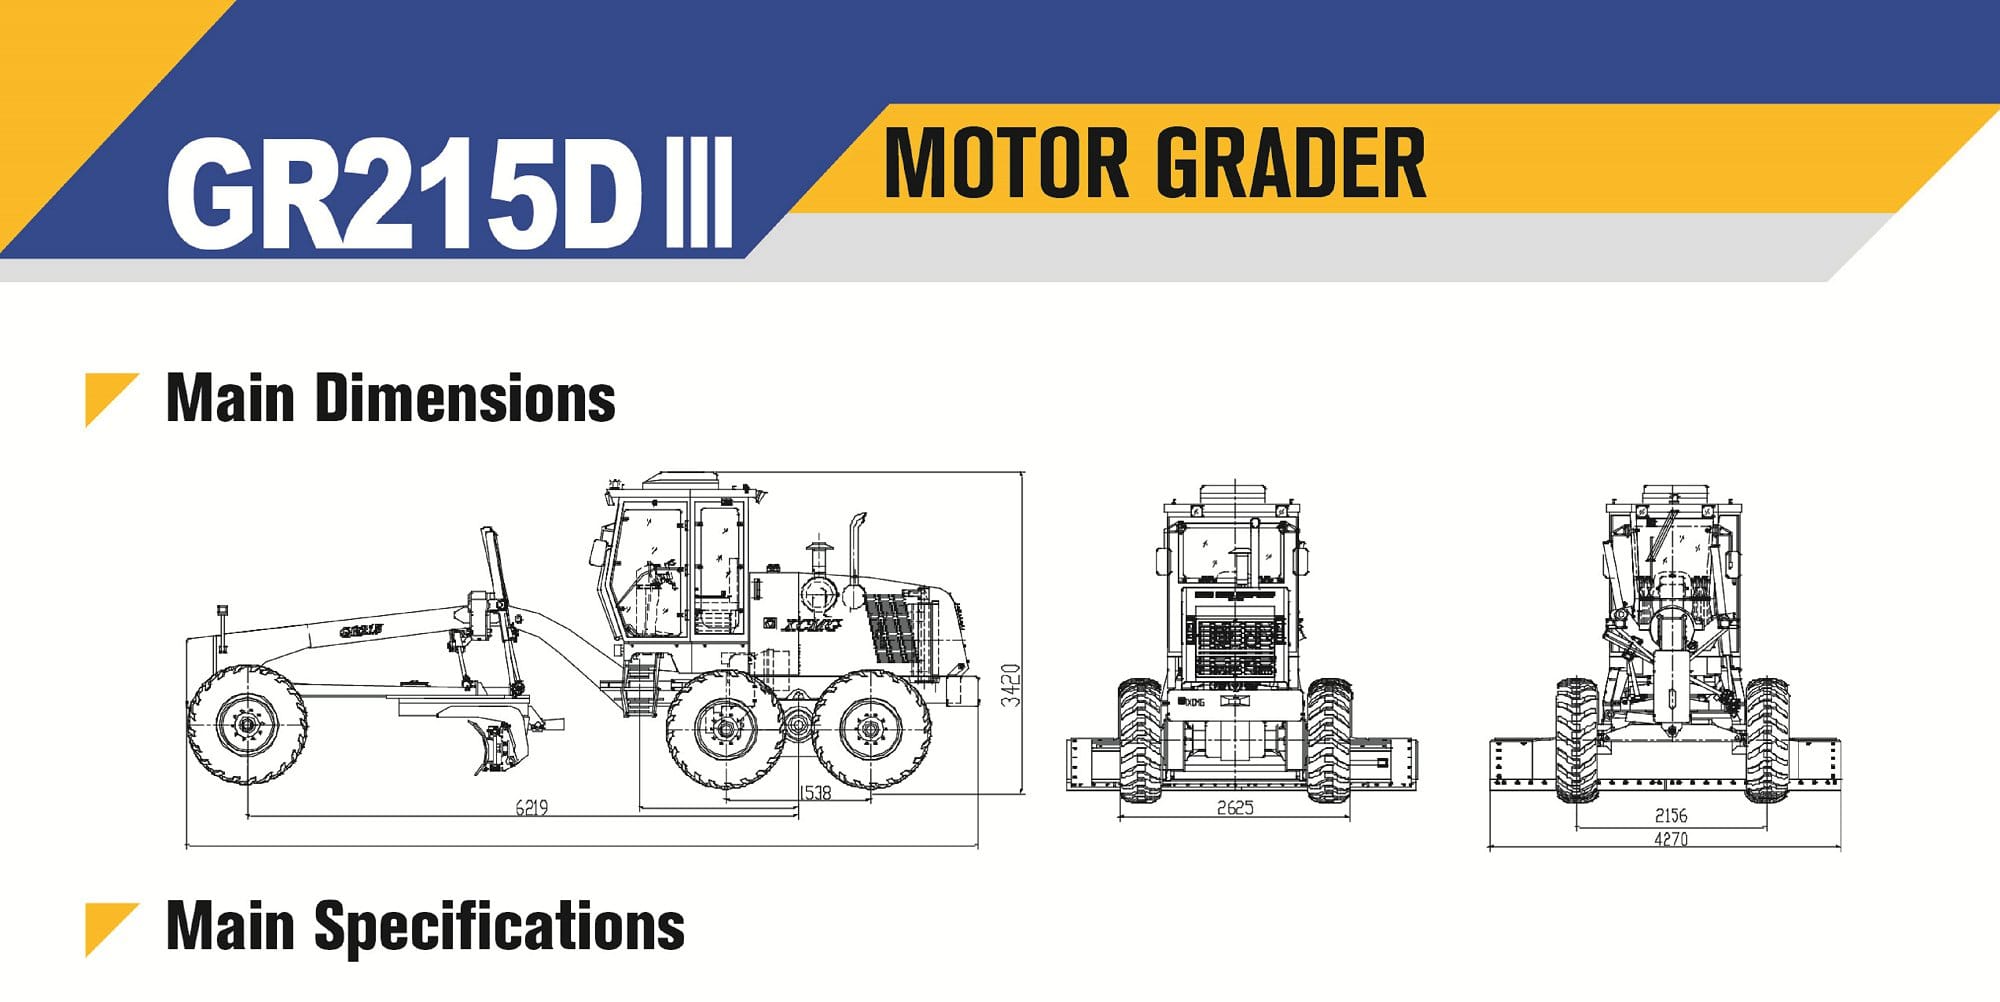 XCMG Official Motor Grader GR215DⅢ For Sale